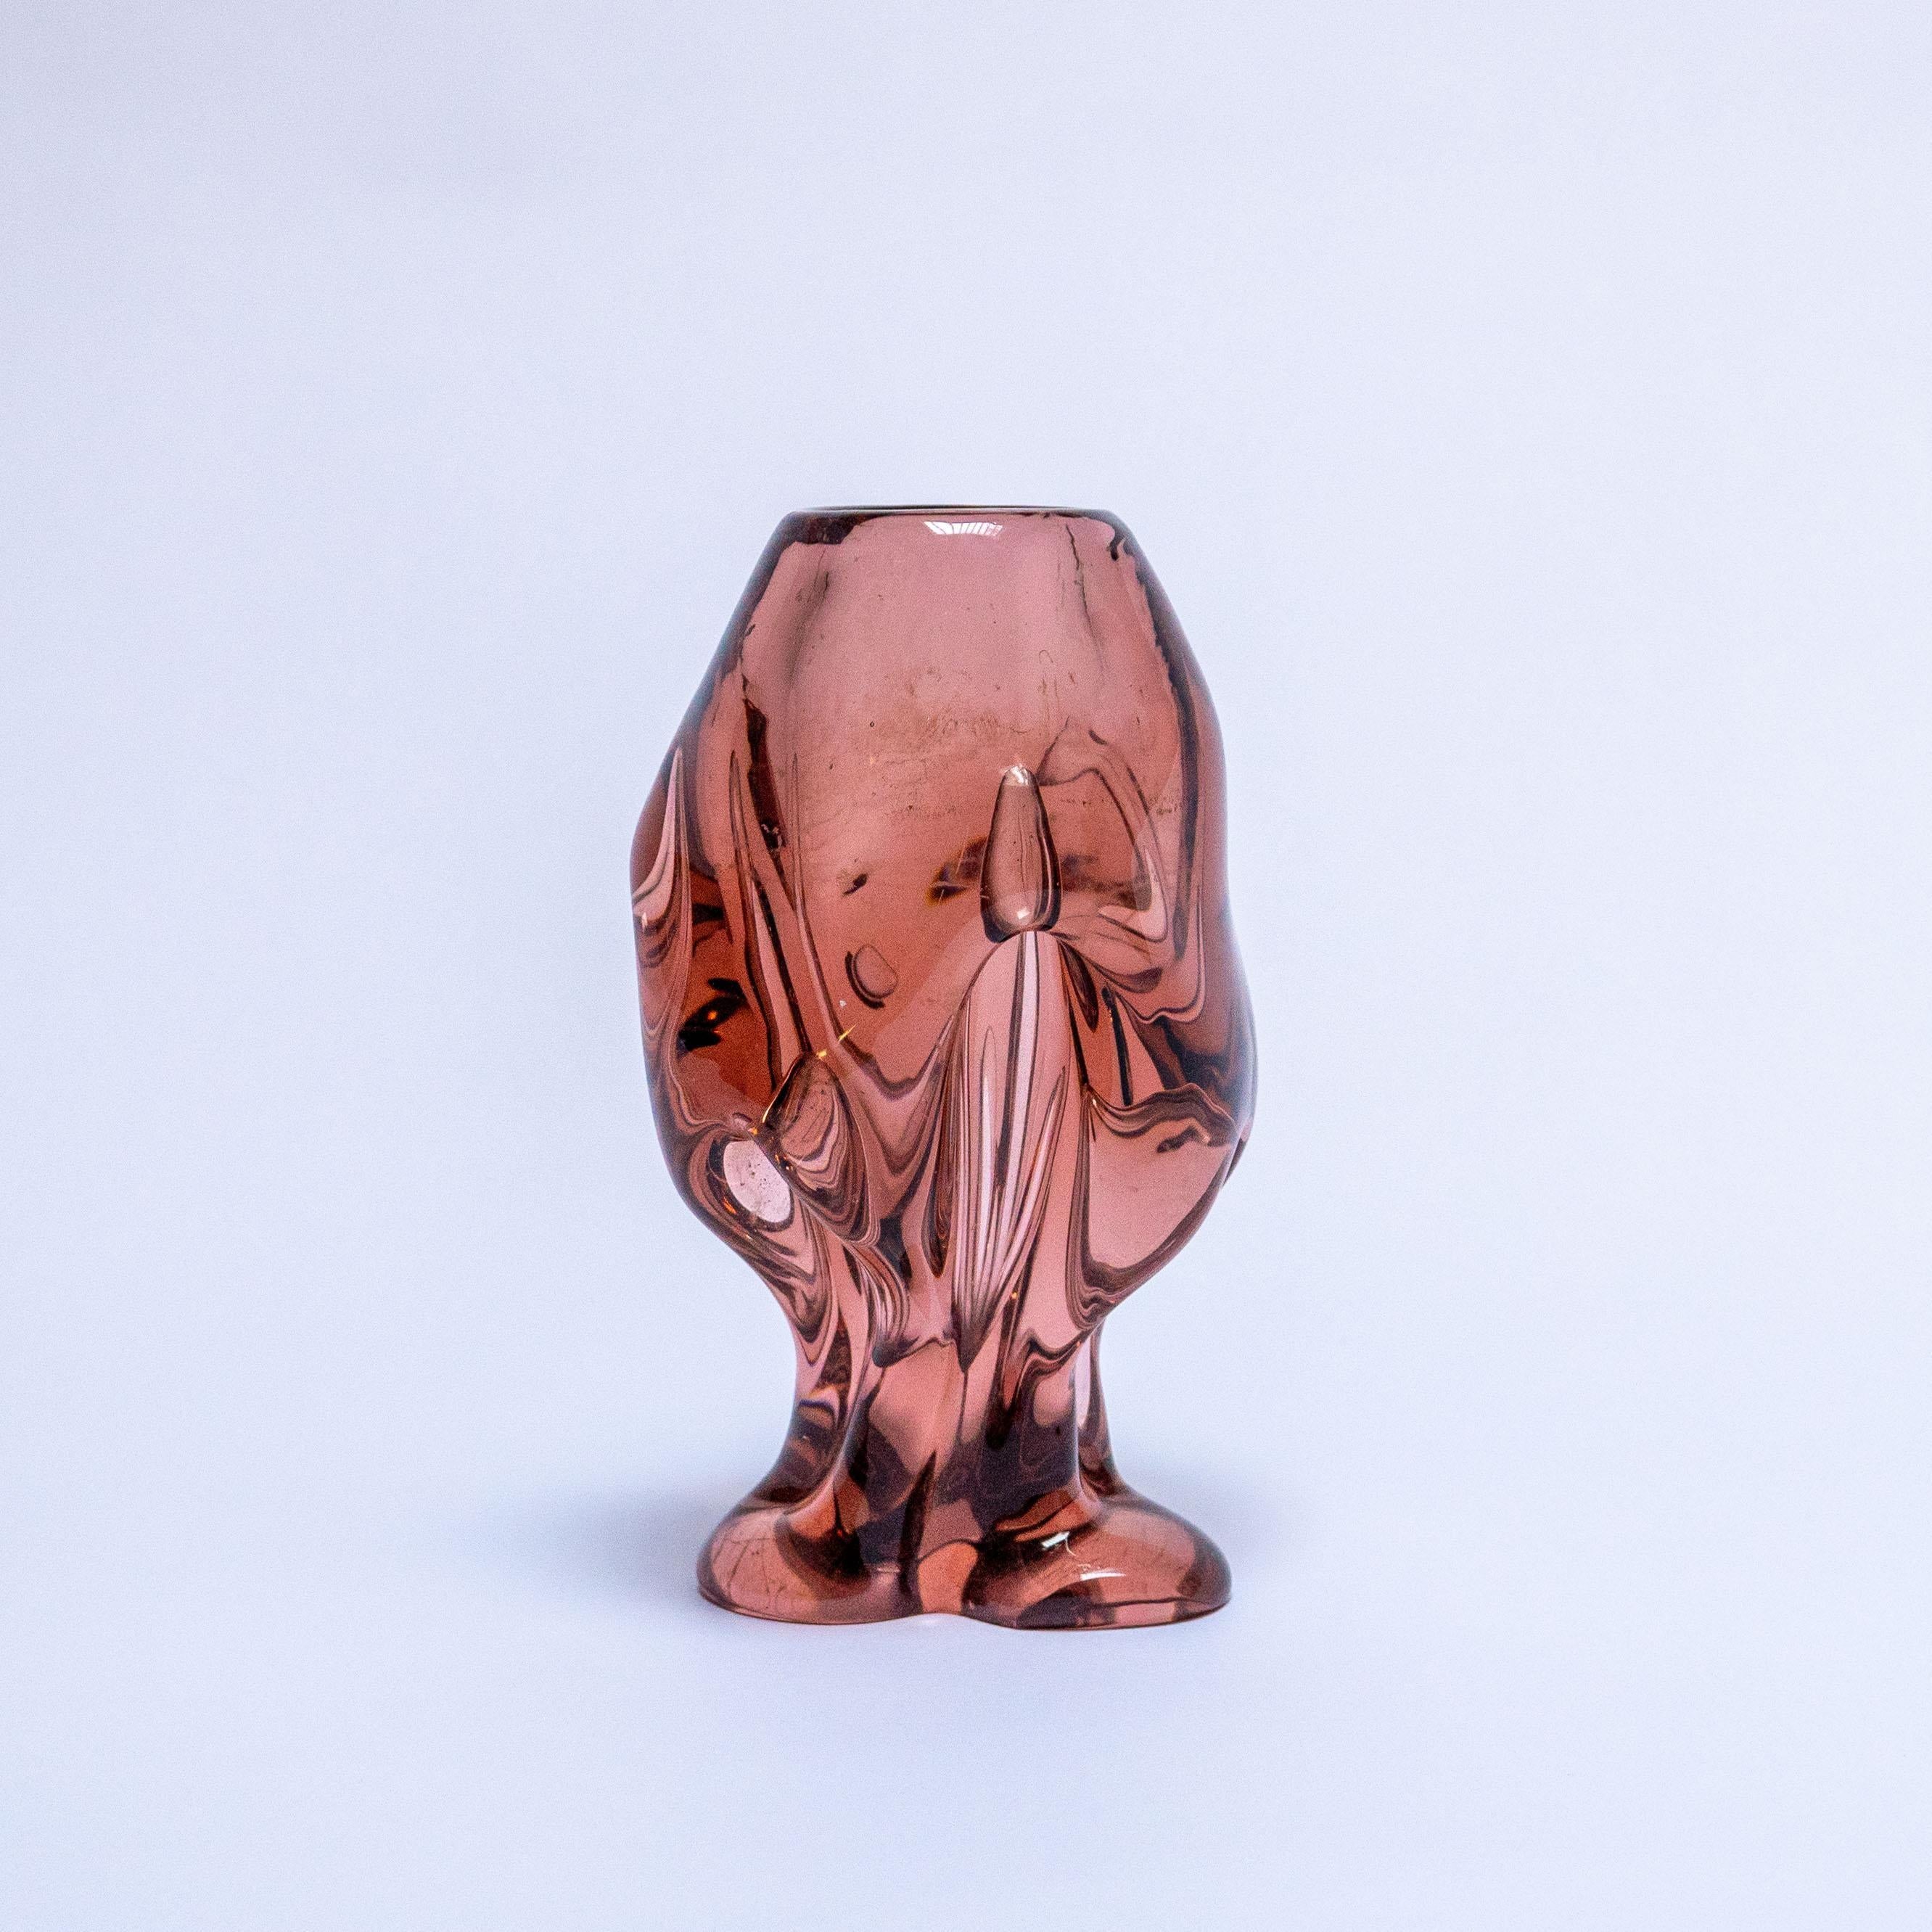 Auf der Insel Murano werden viele verschiedene Glasarten hergestellt. Aus geblasenem, geformtem oder gepresstem Glas werden Gegenstände aller Art hergestellt, von Schalen und Vasen bis hin zu Skulpturen und Kronleuchtern. Die Farbe kann dann noch